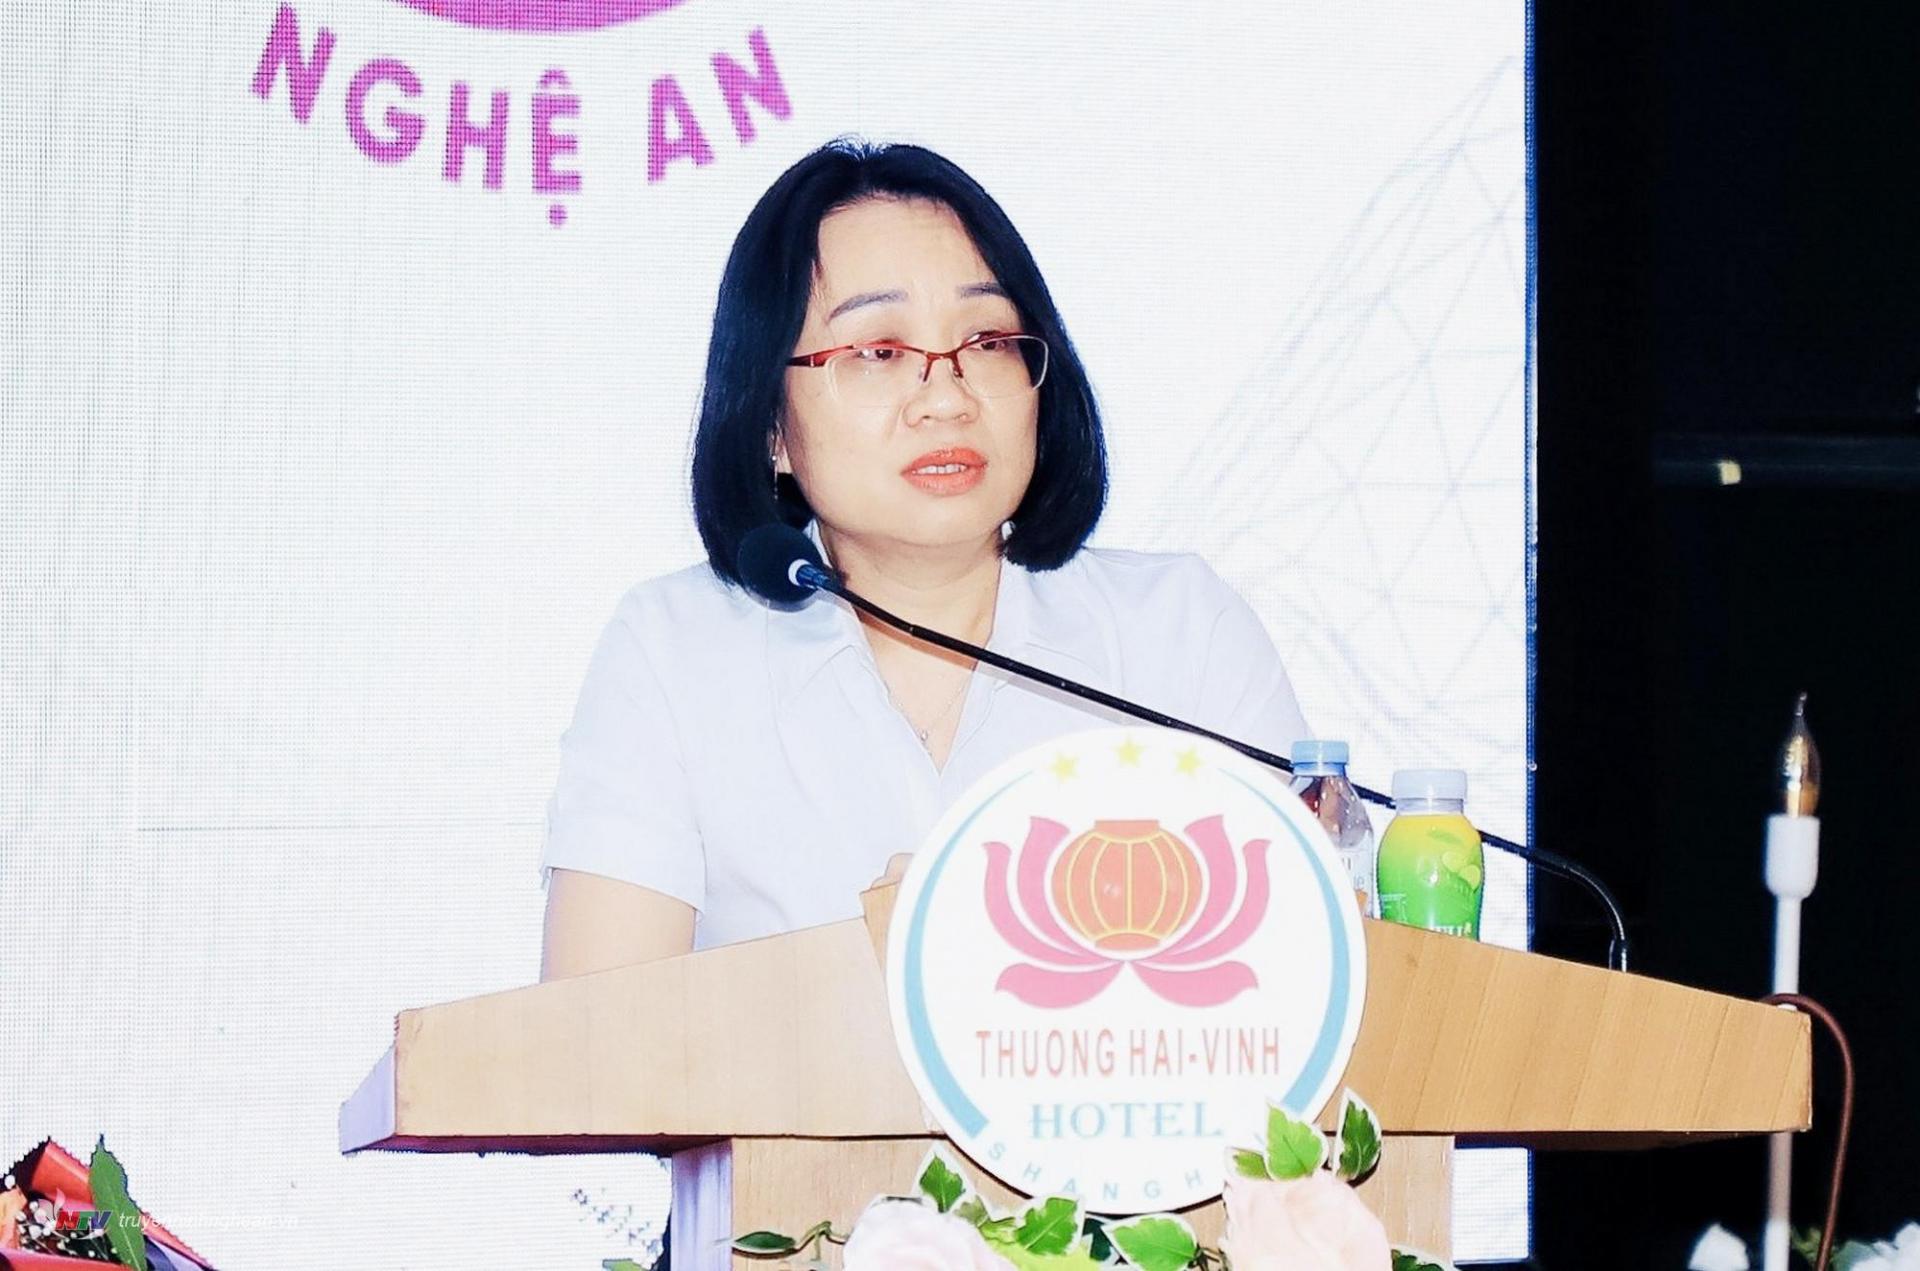 Đồng chí Trần Thị Thanh Huyền, Phó Giám đốc Đài PT-TH tỉnh Nghệ An trình bày tham luận về Nâng tầm vị thế, thương hiệu NTV bằng các tác phẩm báo chí chất lượng cao.